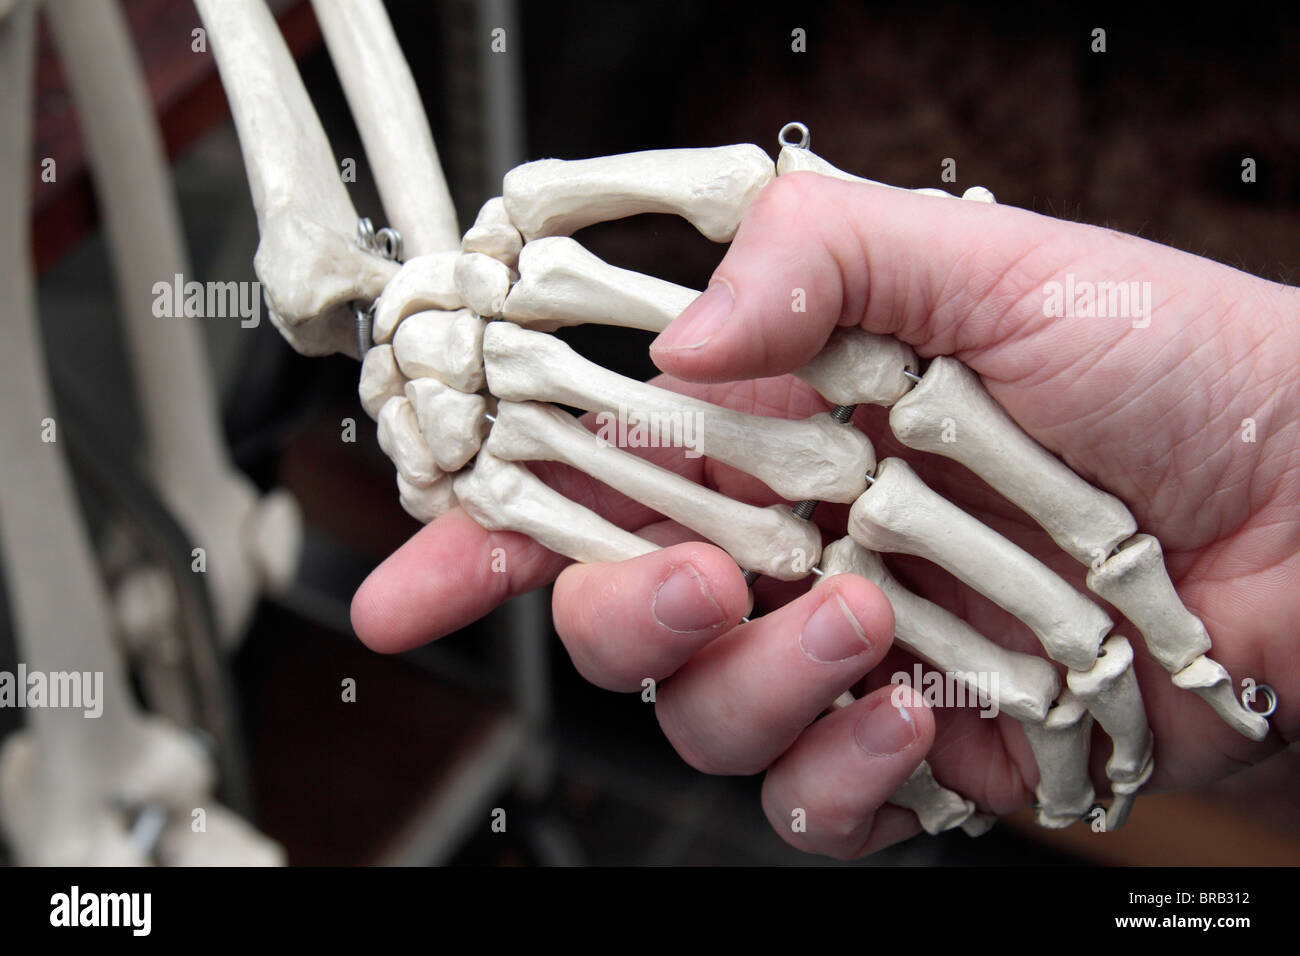 Una mano umana scuote la mano ossea di uno scheletro umano, Londra, Regno Unito. Foto Stock